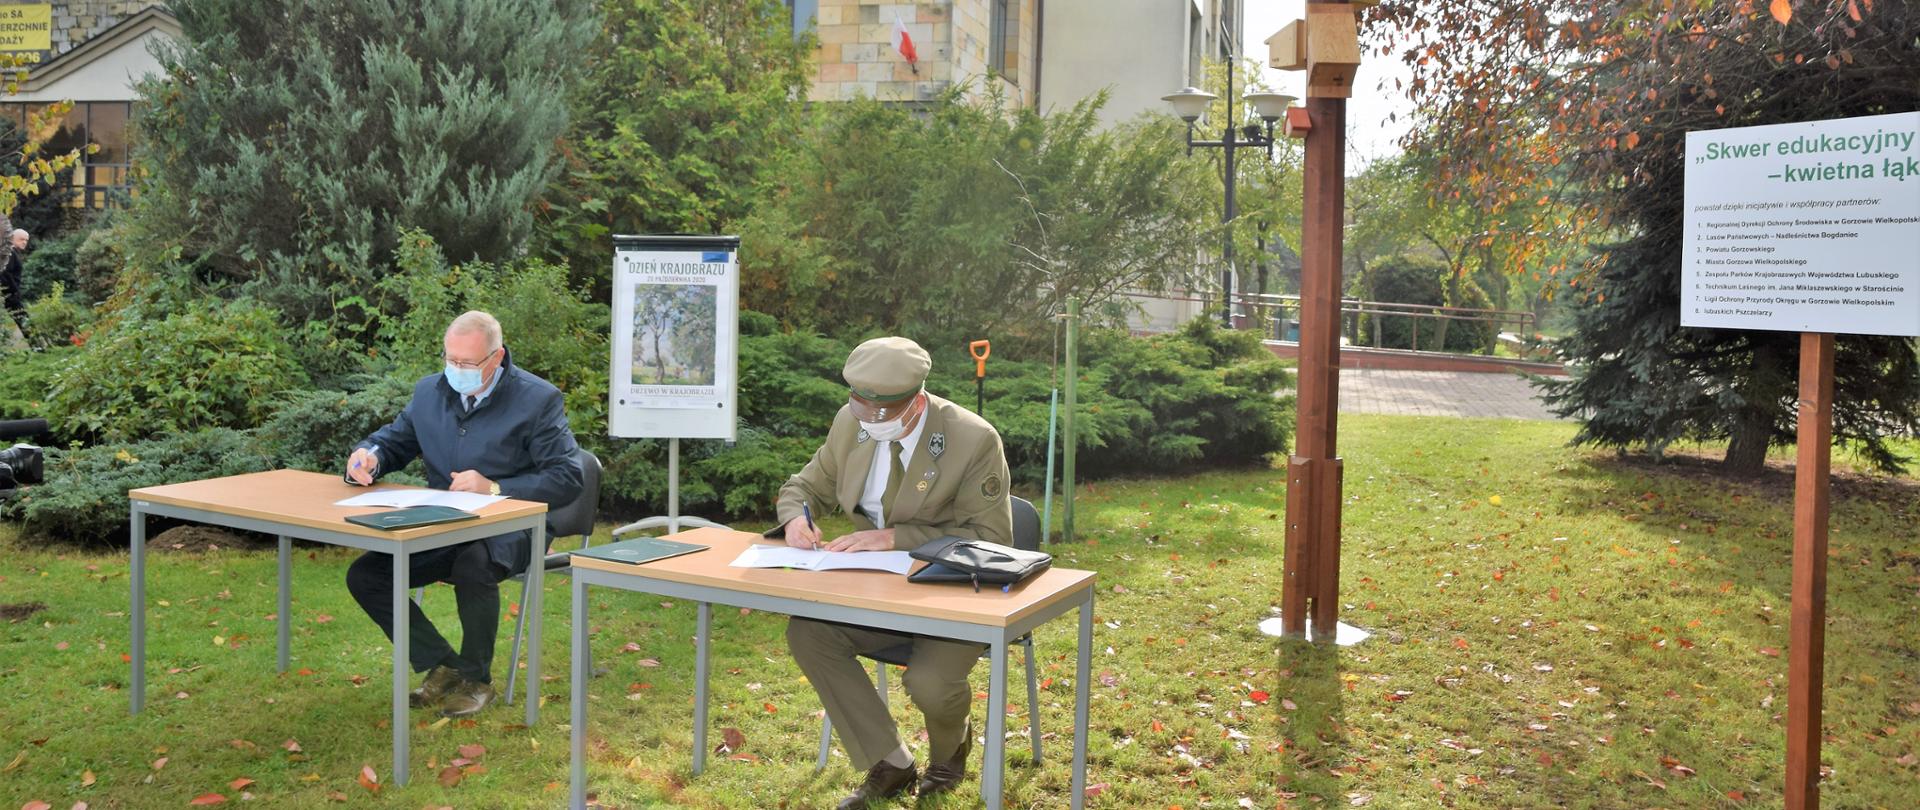 Uroczyste podpisanie porozumienia. Od lewej Józef Kruczkowski - Regionalny Dyrektor Ochrony Środowiska w Gorzowie Wielkopolskim i Przemysław Jarosik - Dyrektor Technikum Leśnego w Starościnie . Podpisania dokonują na skwerze edukacyjnym przed siedzibą RDOŚ